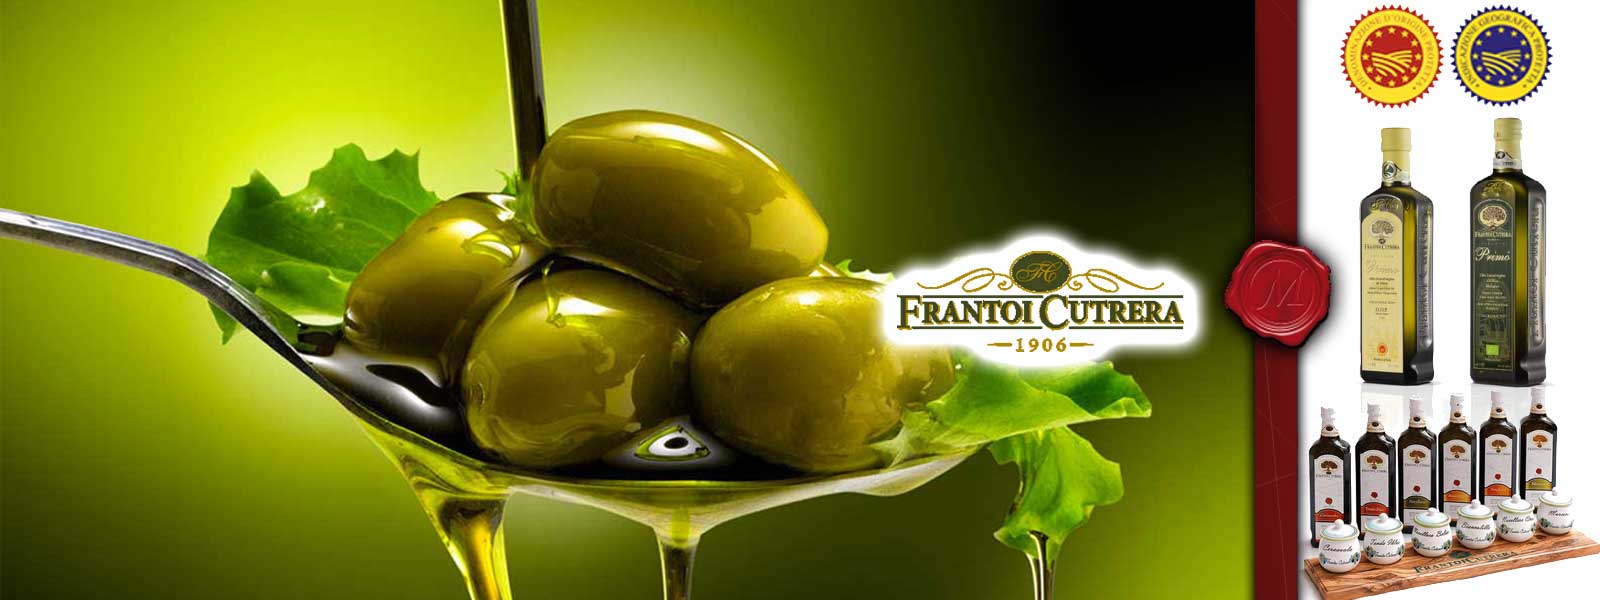 Vaj ulliri nga Frantoi Cutrera 